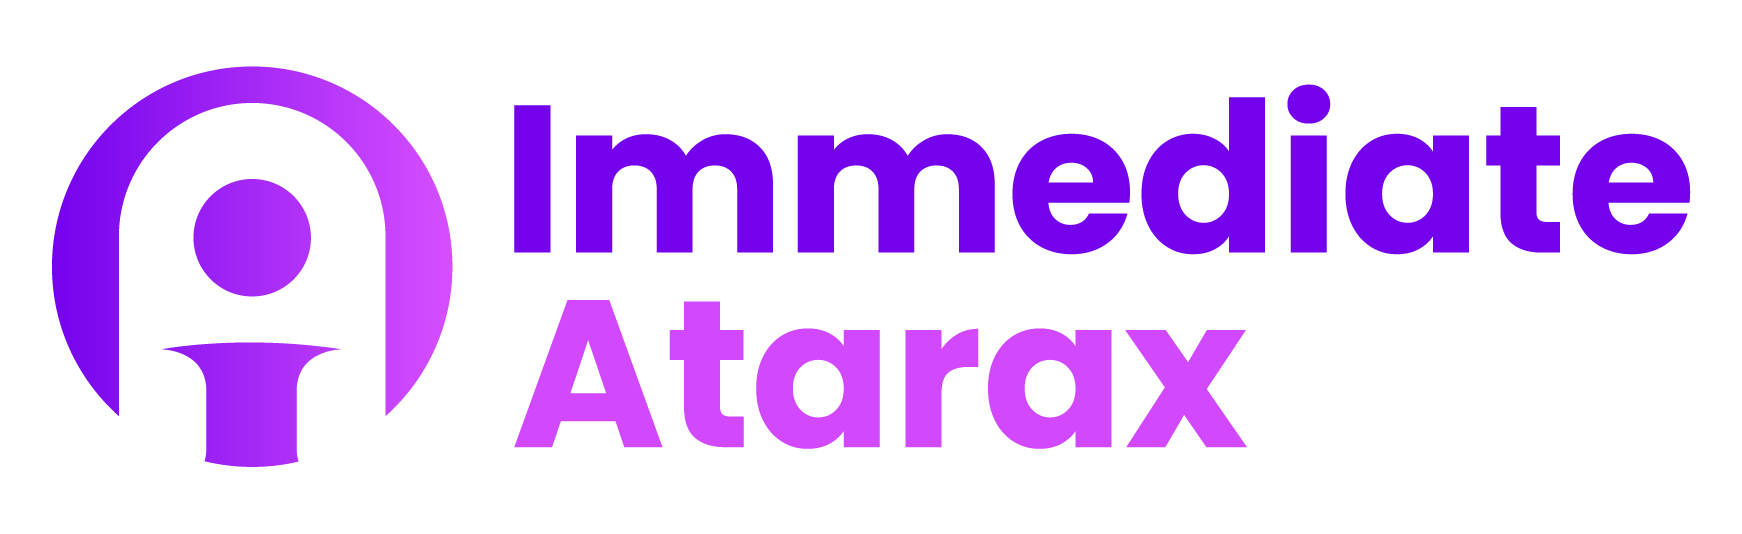 Immediate Atarax - आज ही अपनी ट्रेडिंग यात्रा शुरू करें